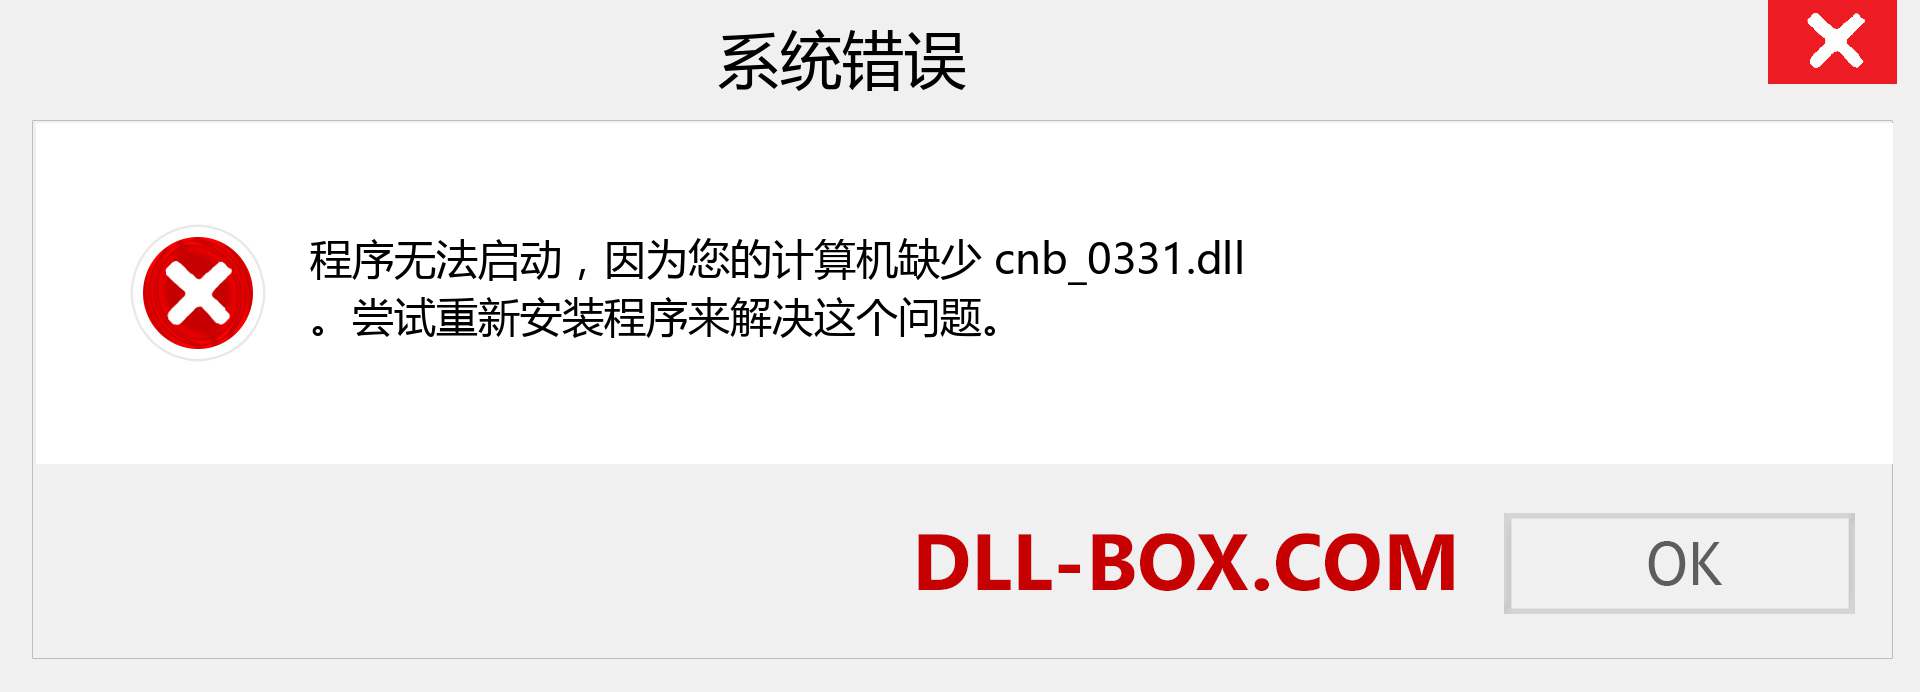 cnb_0331.dll 文件丢失？。 适用于 Windows 7、8、10 的下载 - 修复 Windows、照片、图像上的 cnb_0331 dll 丢失错误